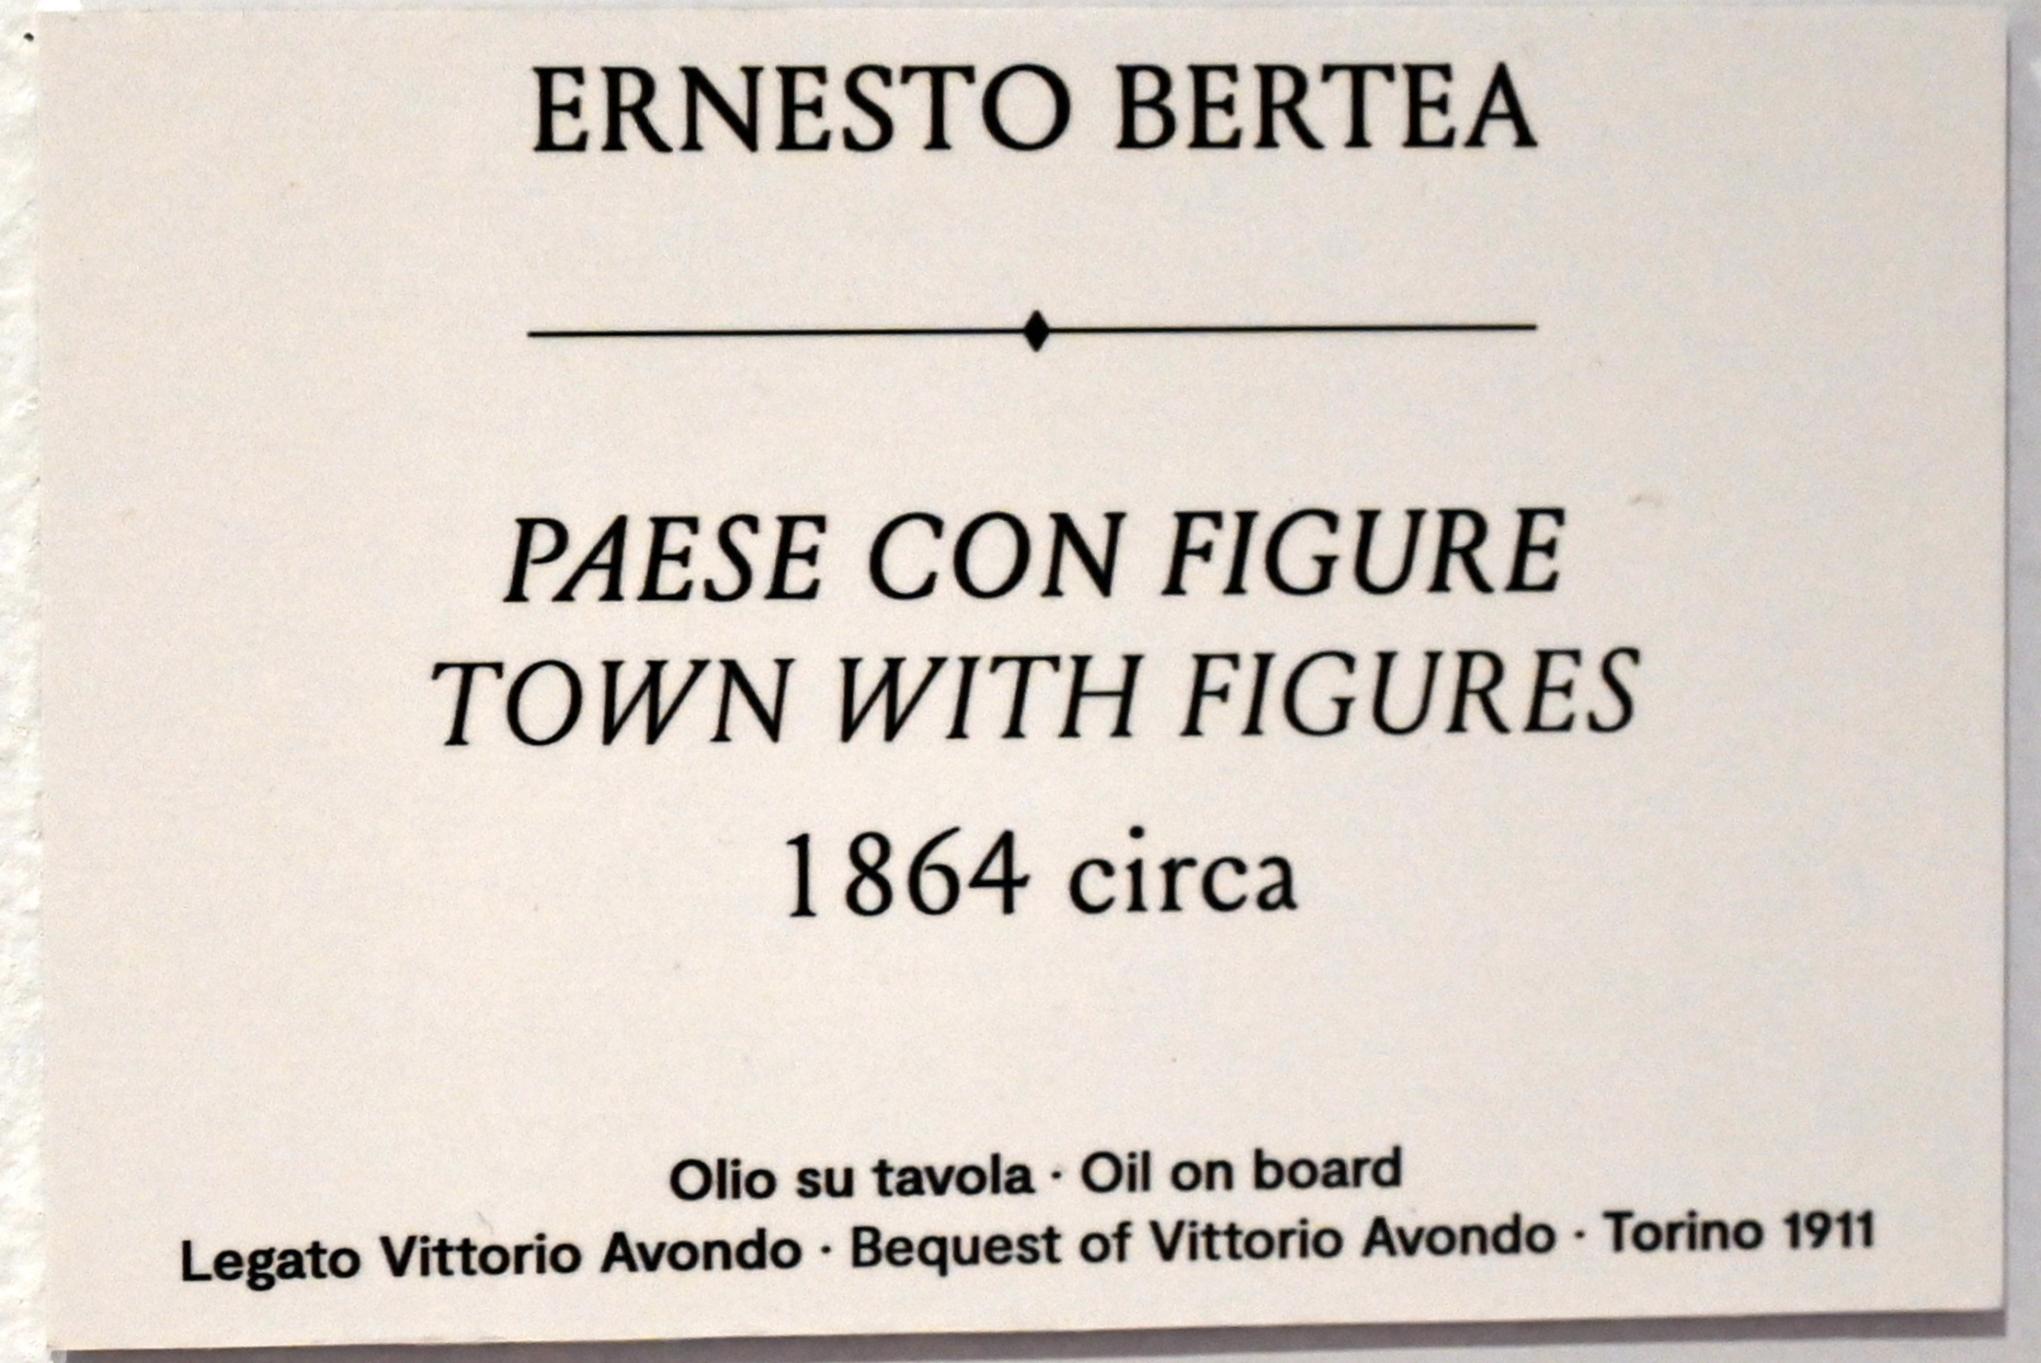 Ernesto Bertea (1864–1868), Dorf mit Figuren, Turin, GAM Torino, Ausstellung "Natur und Wahrheit" vom 09.07.-17.10.2021, um 1864, Bild 2/2